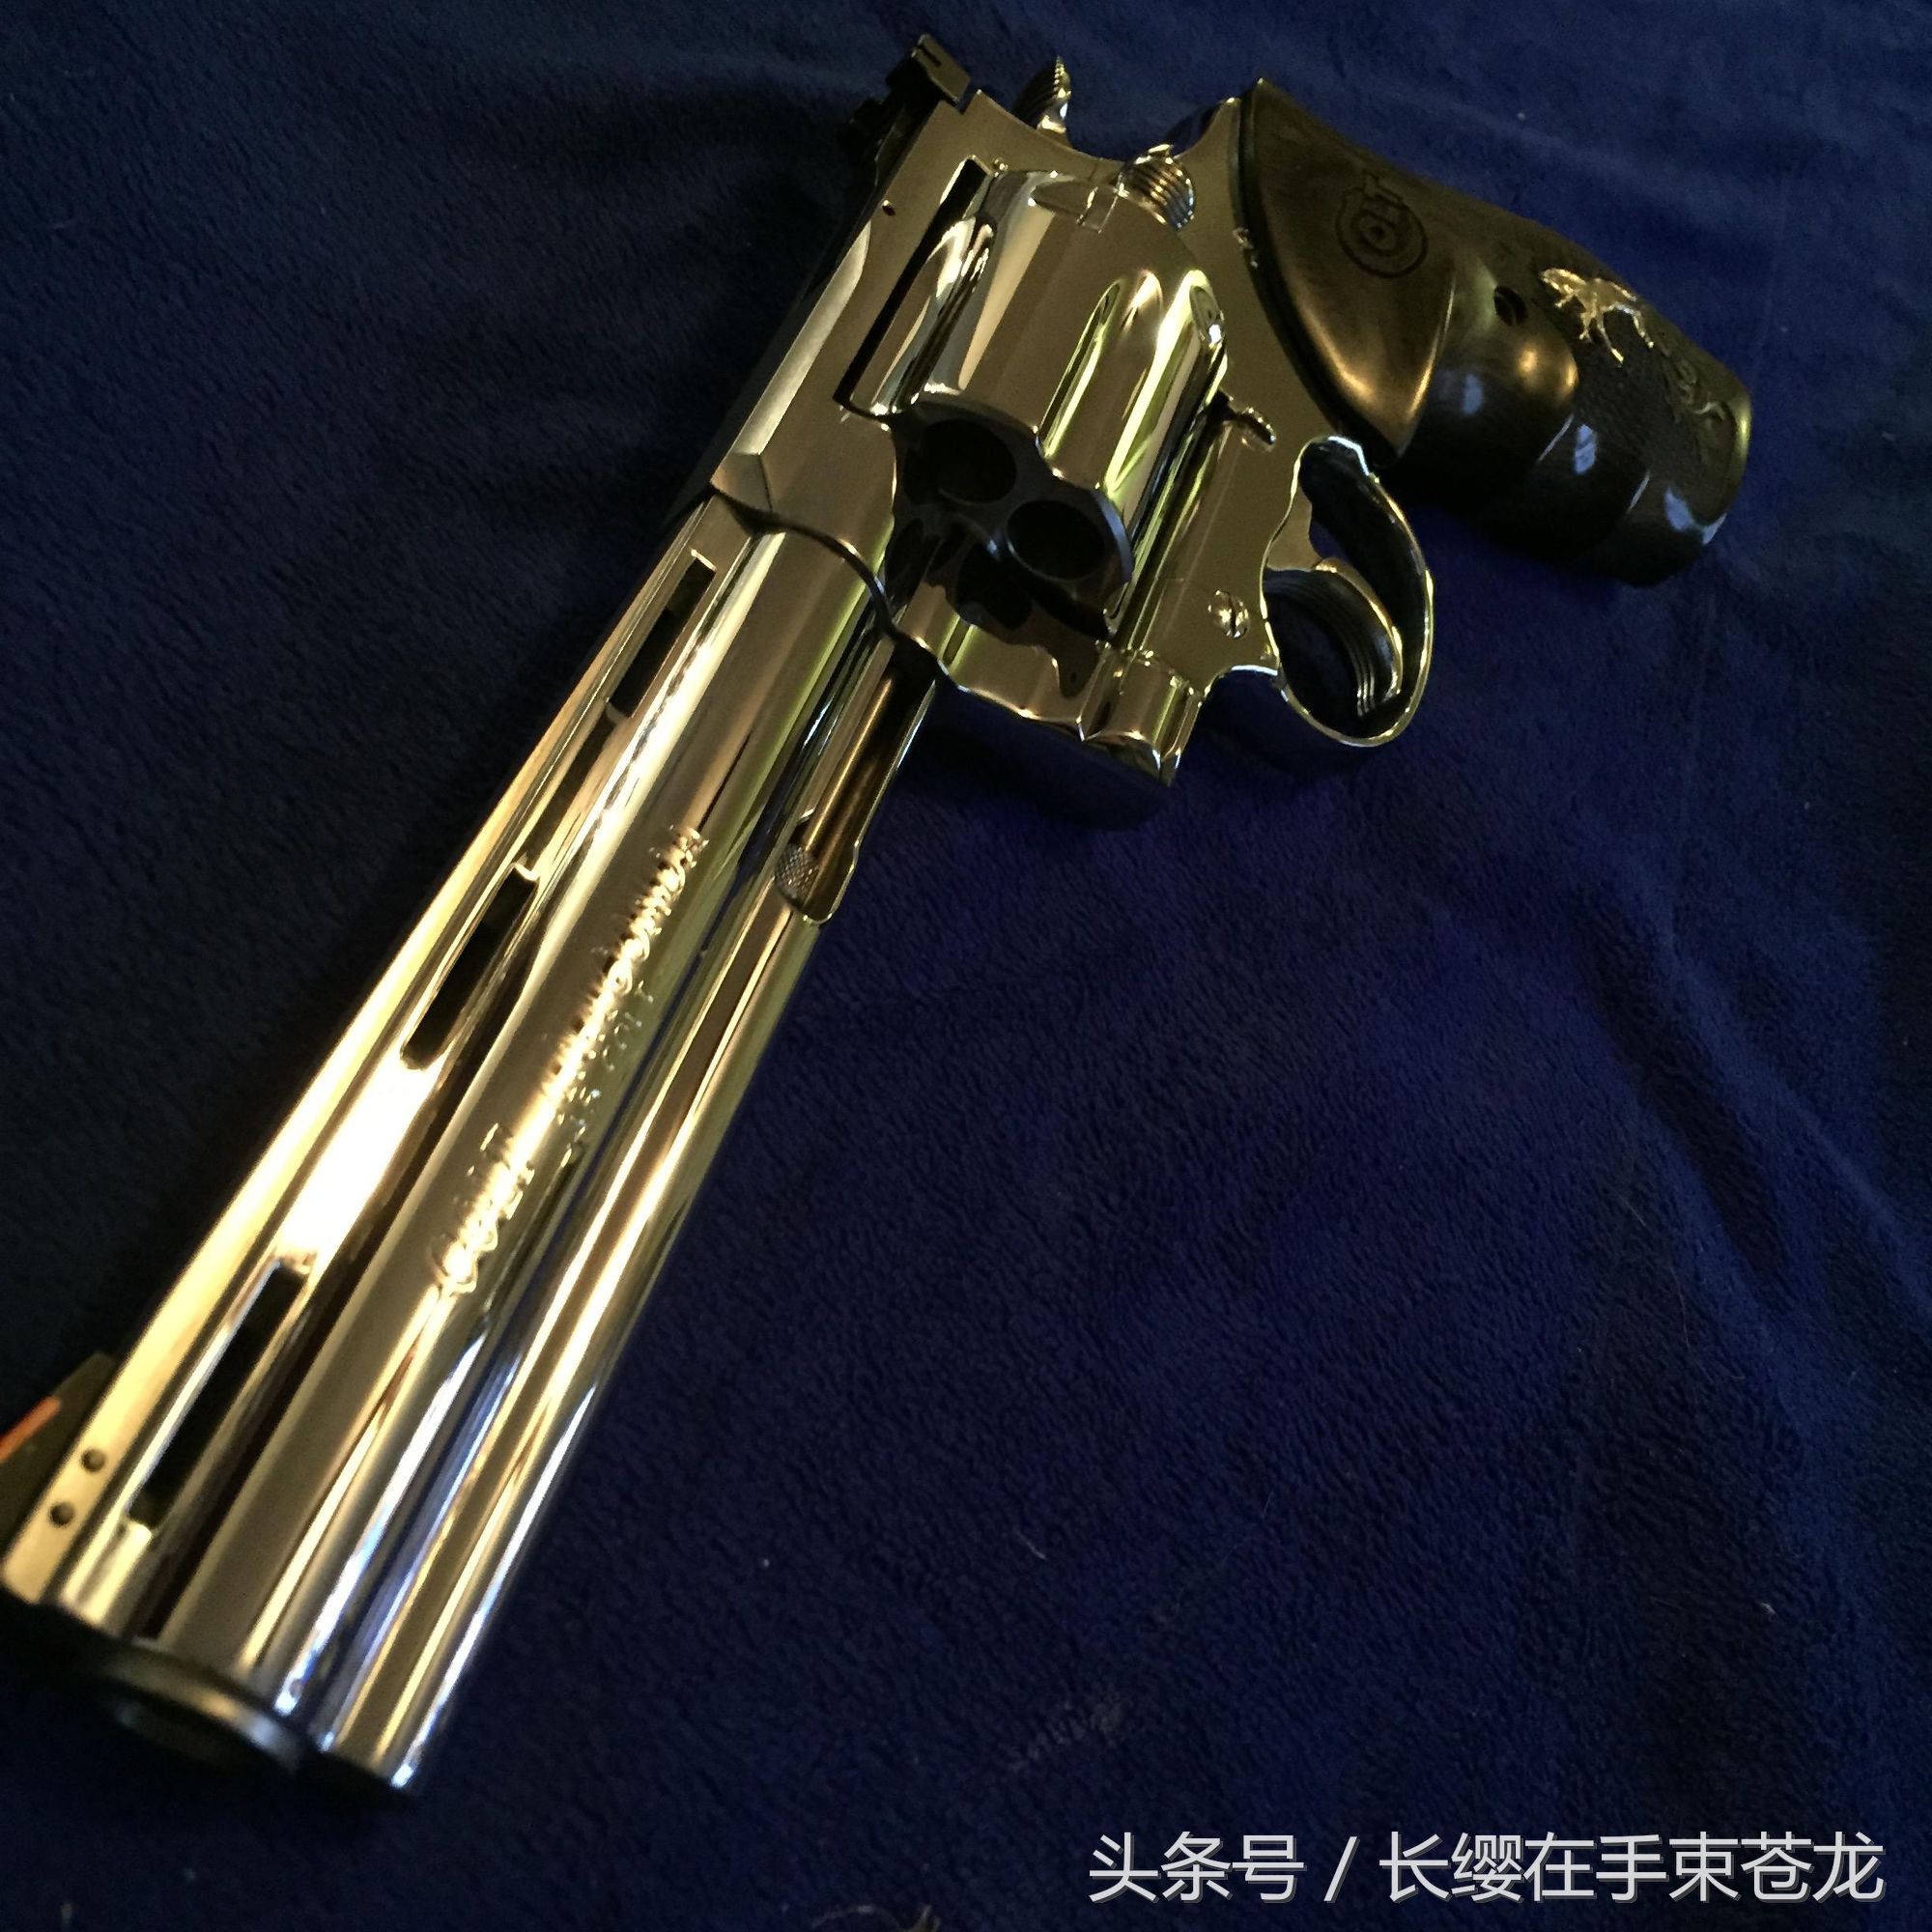 一把由柯尔特公司设计并生产的左轮手枪_搜狐军事_搜狐网